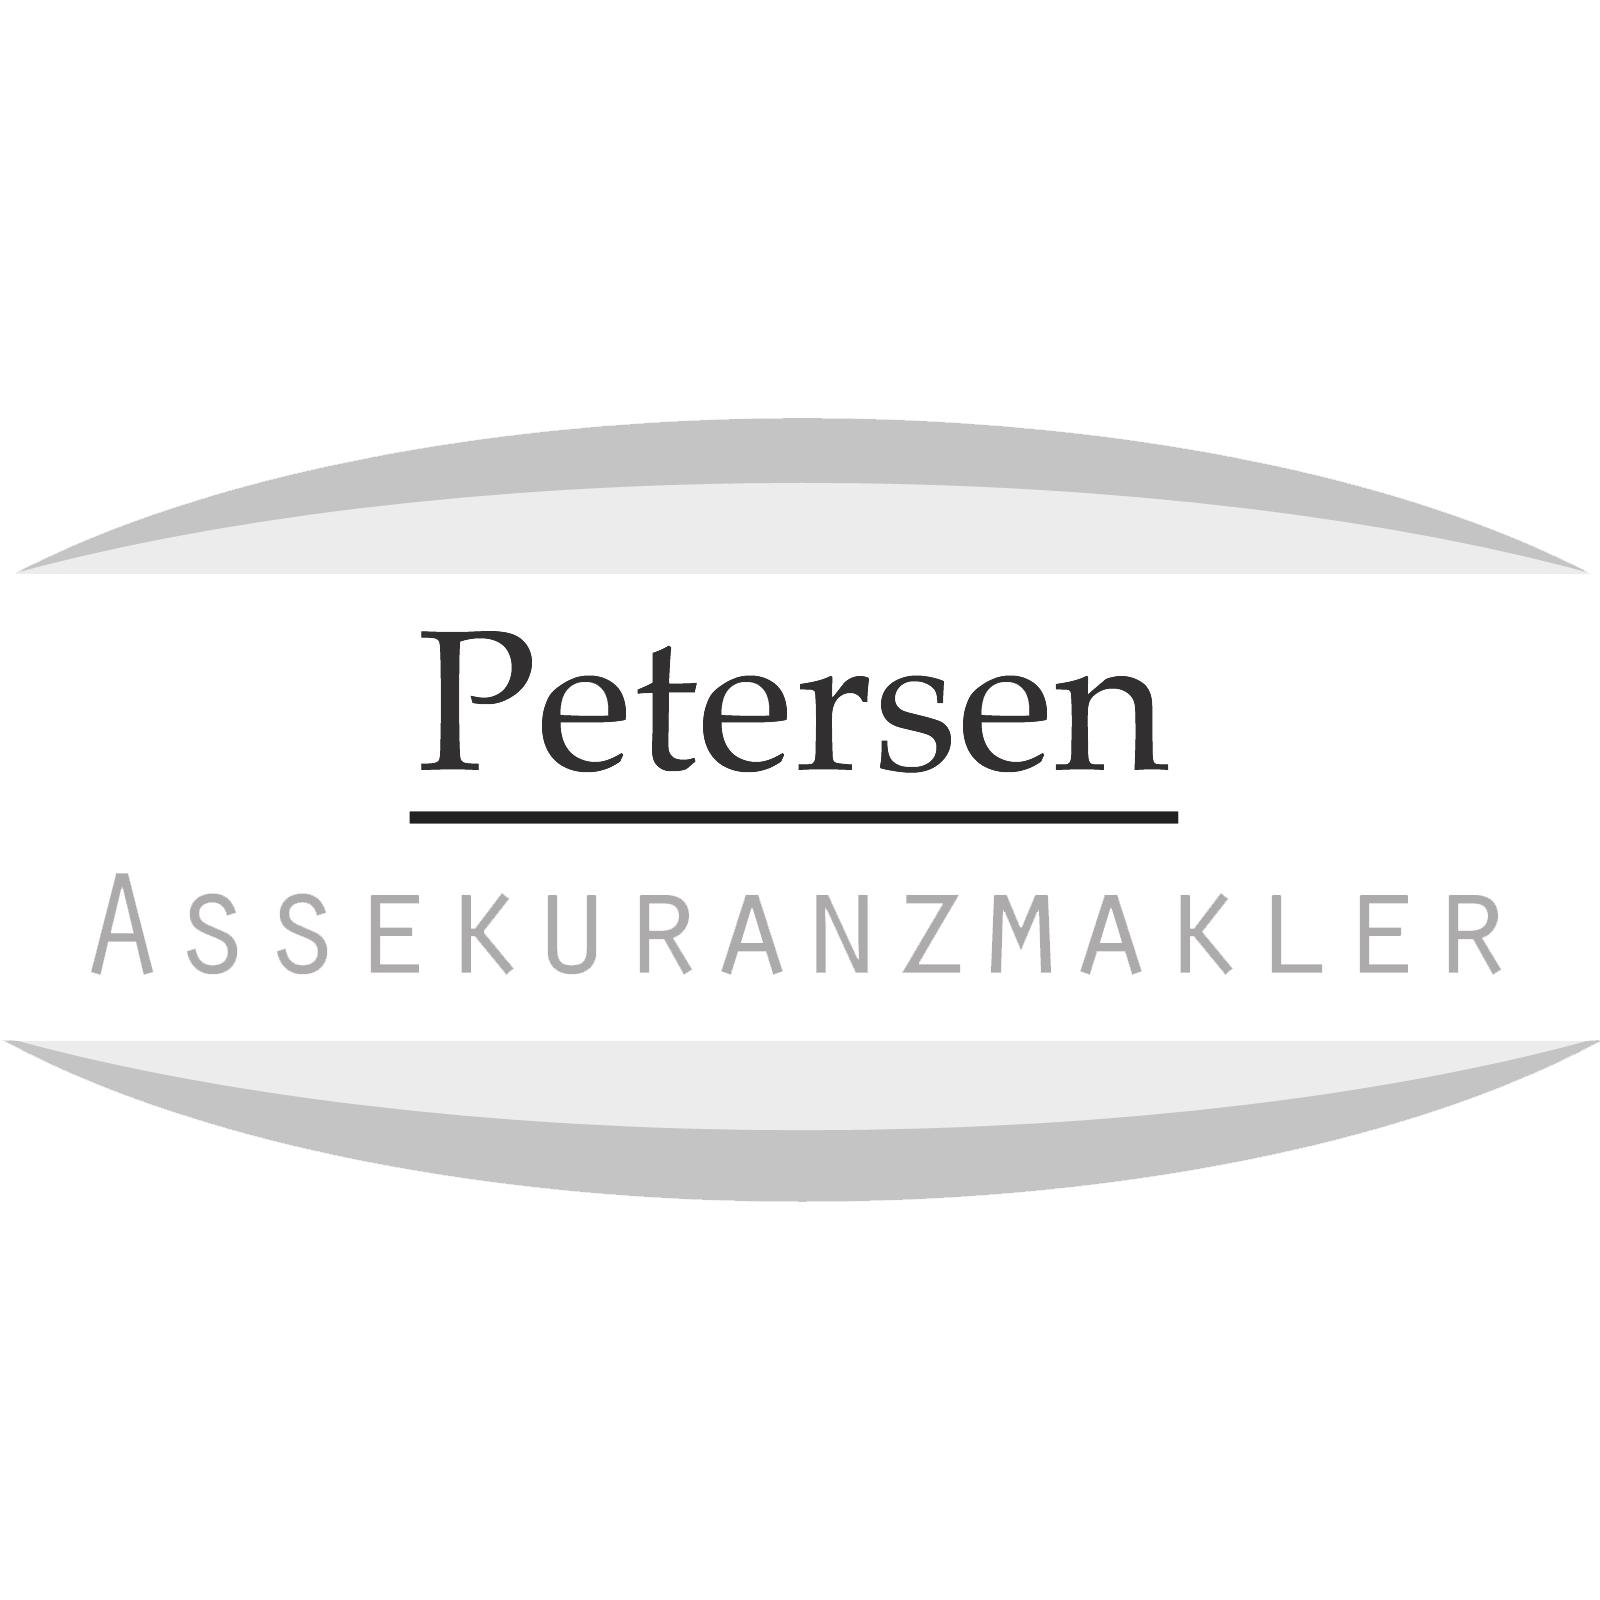 Petersen Assekuranzmakler